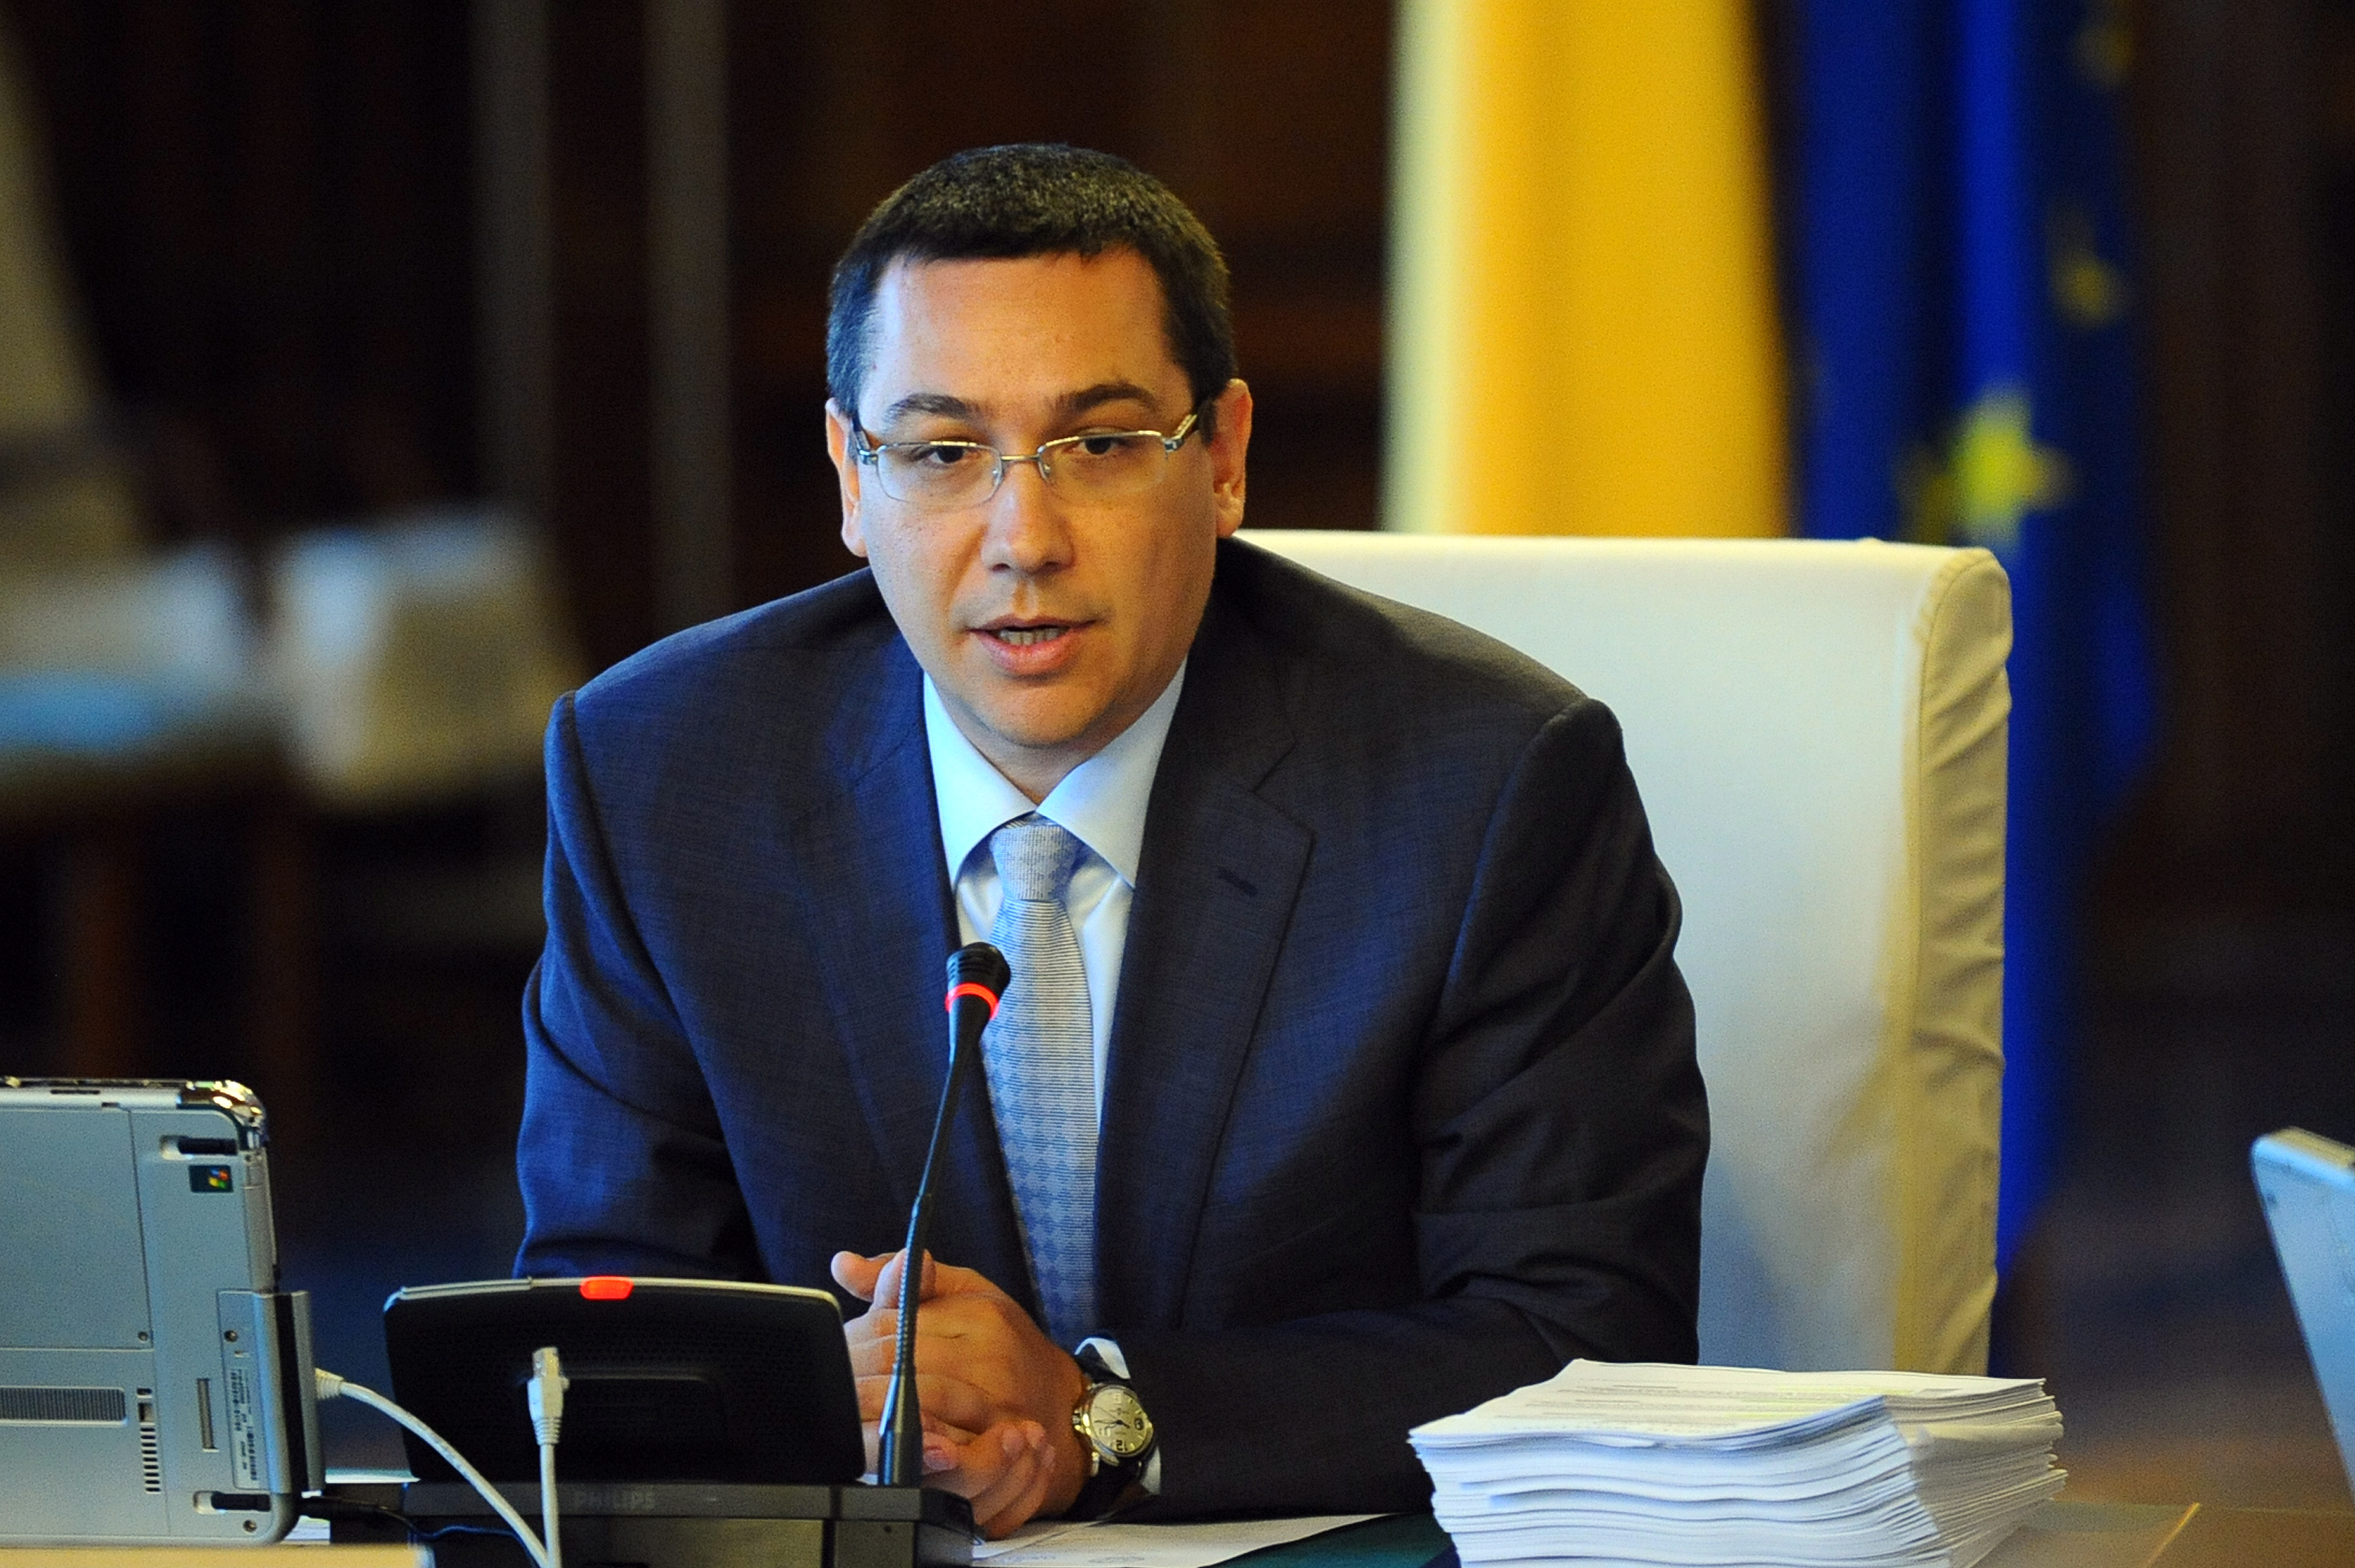 Petre Toba le-a declarat anchetatorilor ca premierul Victor Ponta nu are nimic de-a face cu activitatea sa si cu acest caz